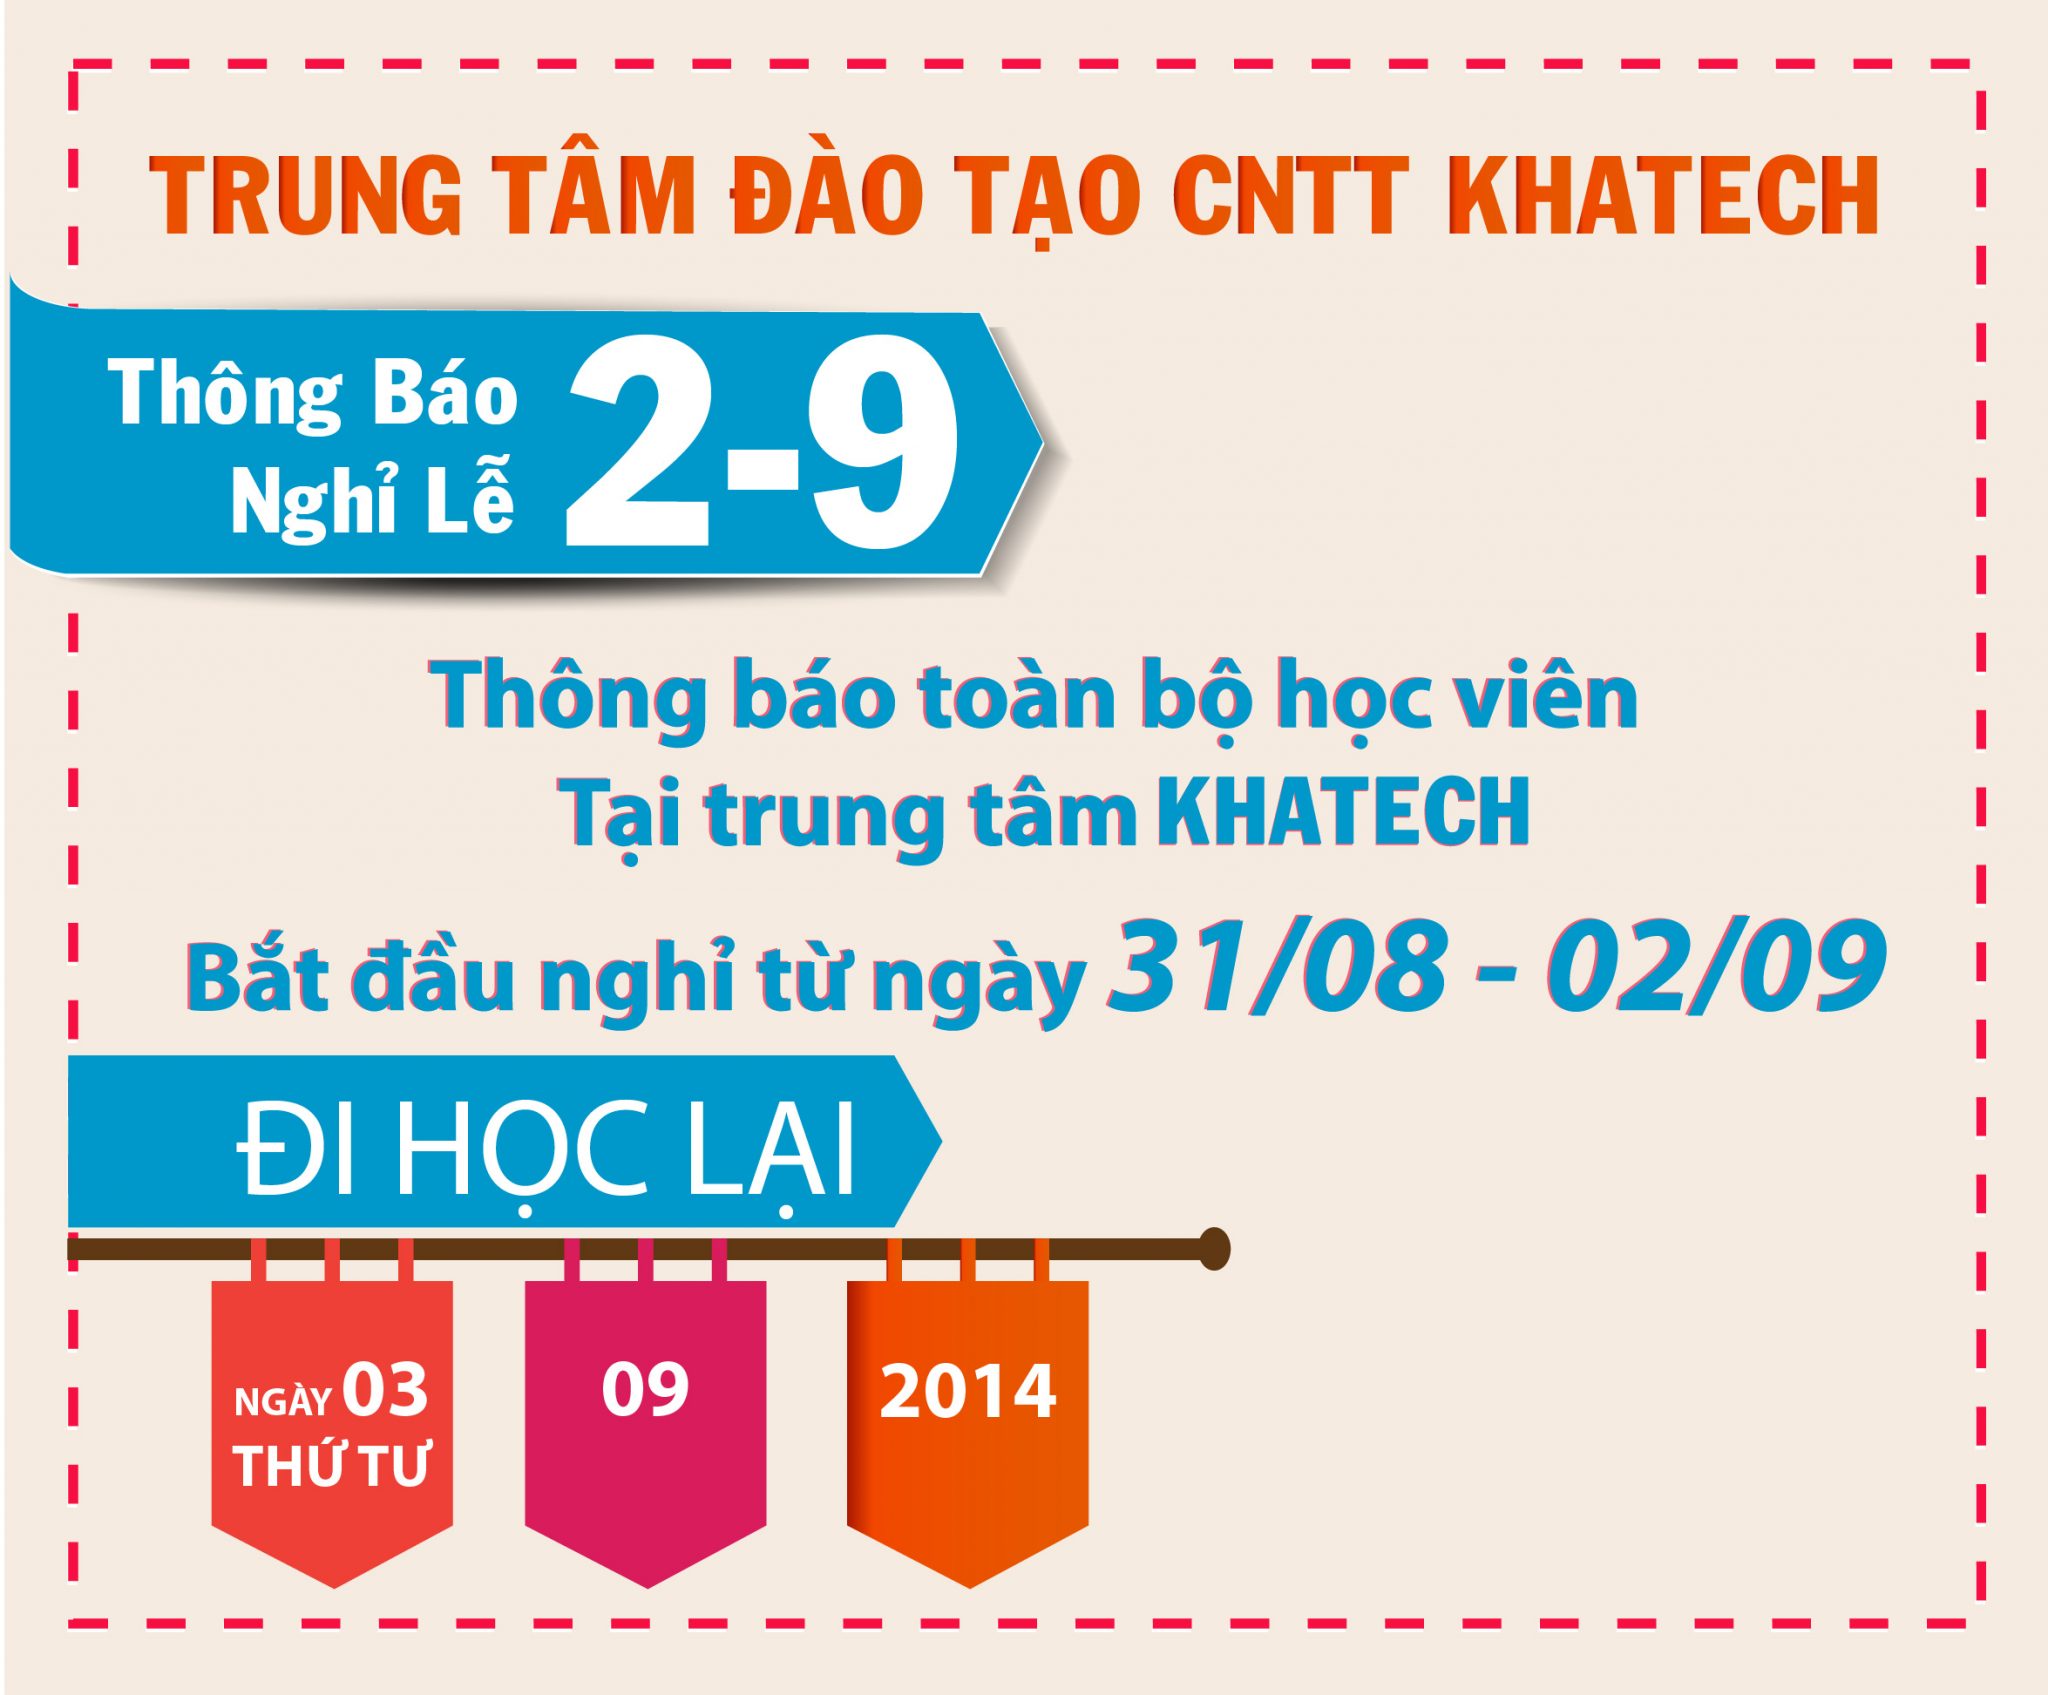 THONG BAO NGHI LE